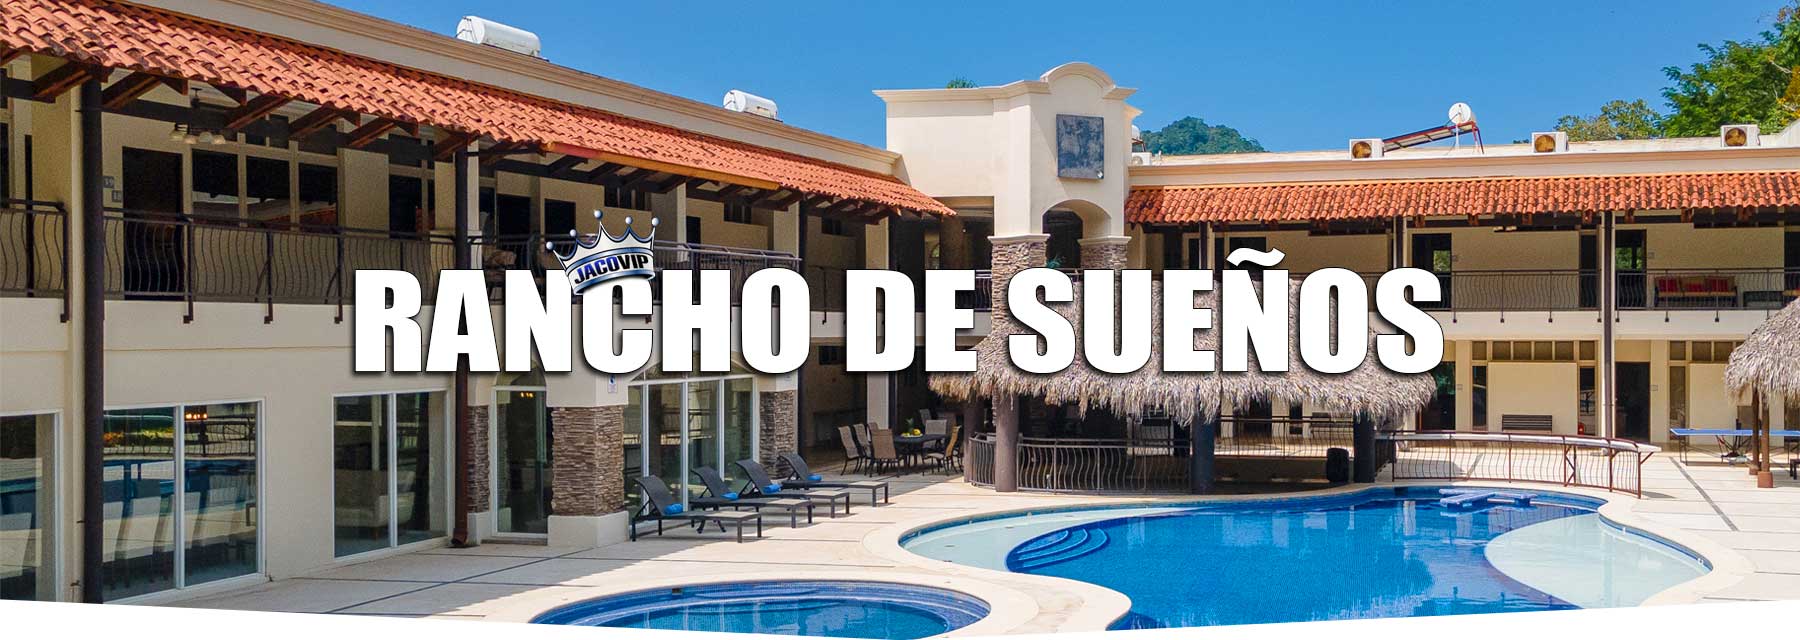 Rancho de Sueños Private Resort in Costa Rica